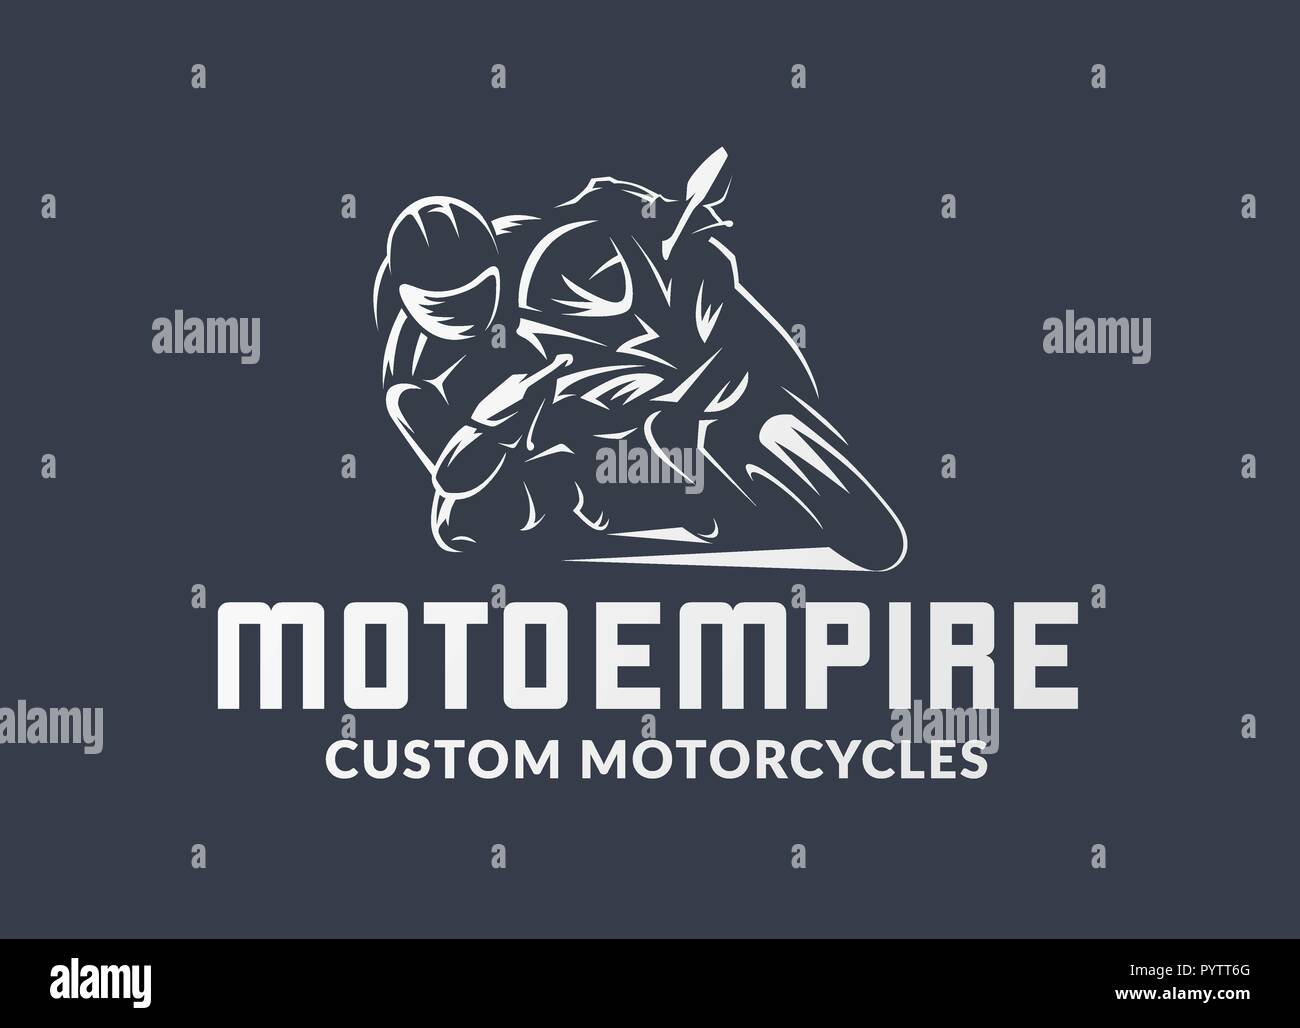 Illustrazione vettoriale di moto con ali su sfondo bianco Immagine e  Vettoriale - Alamy